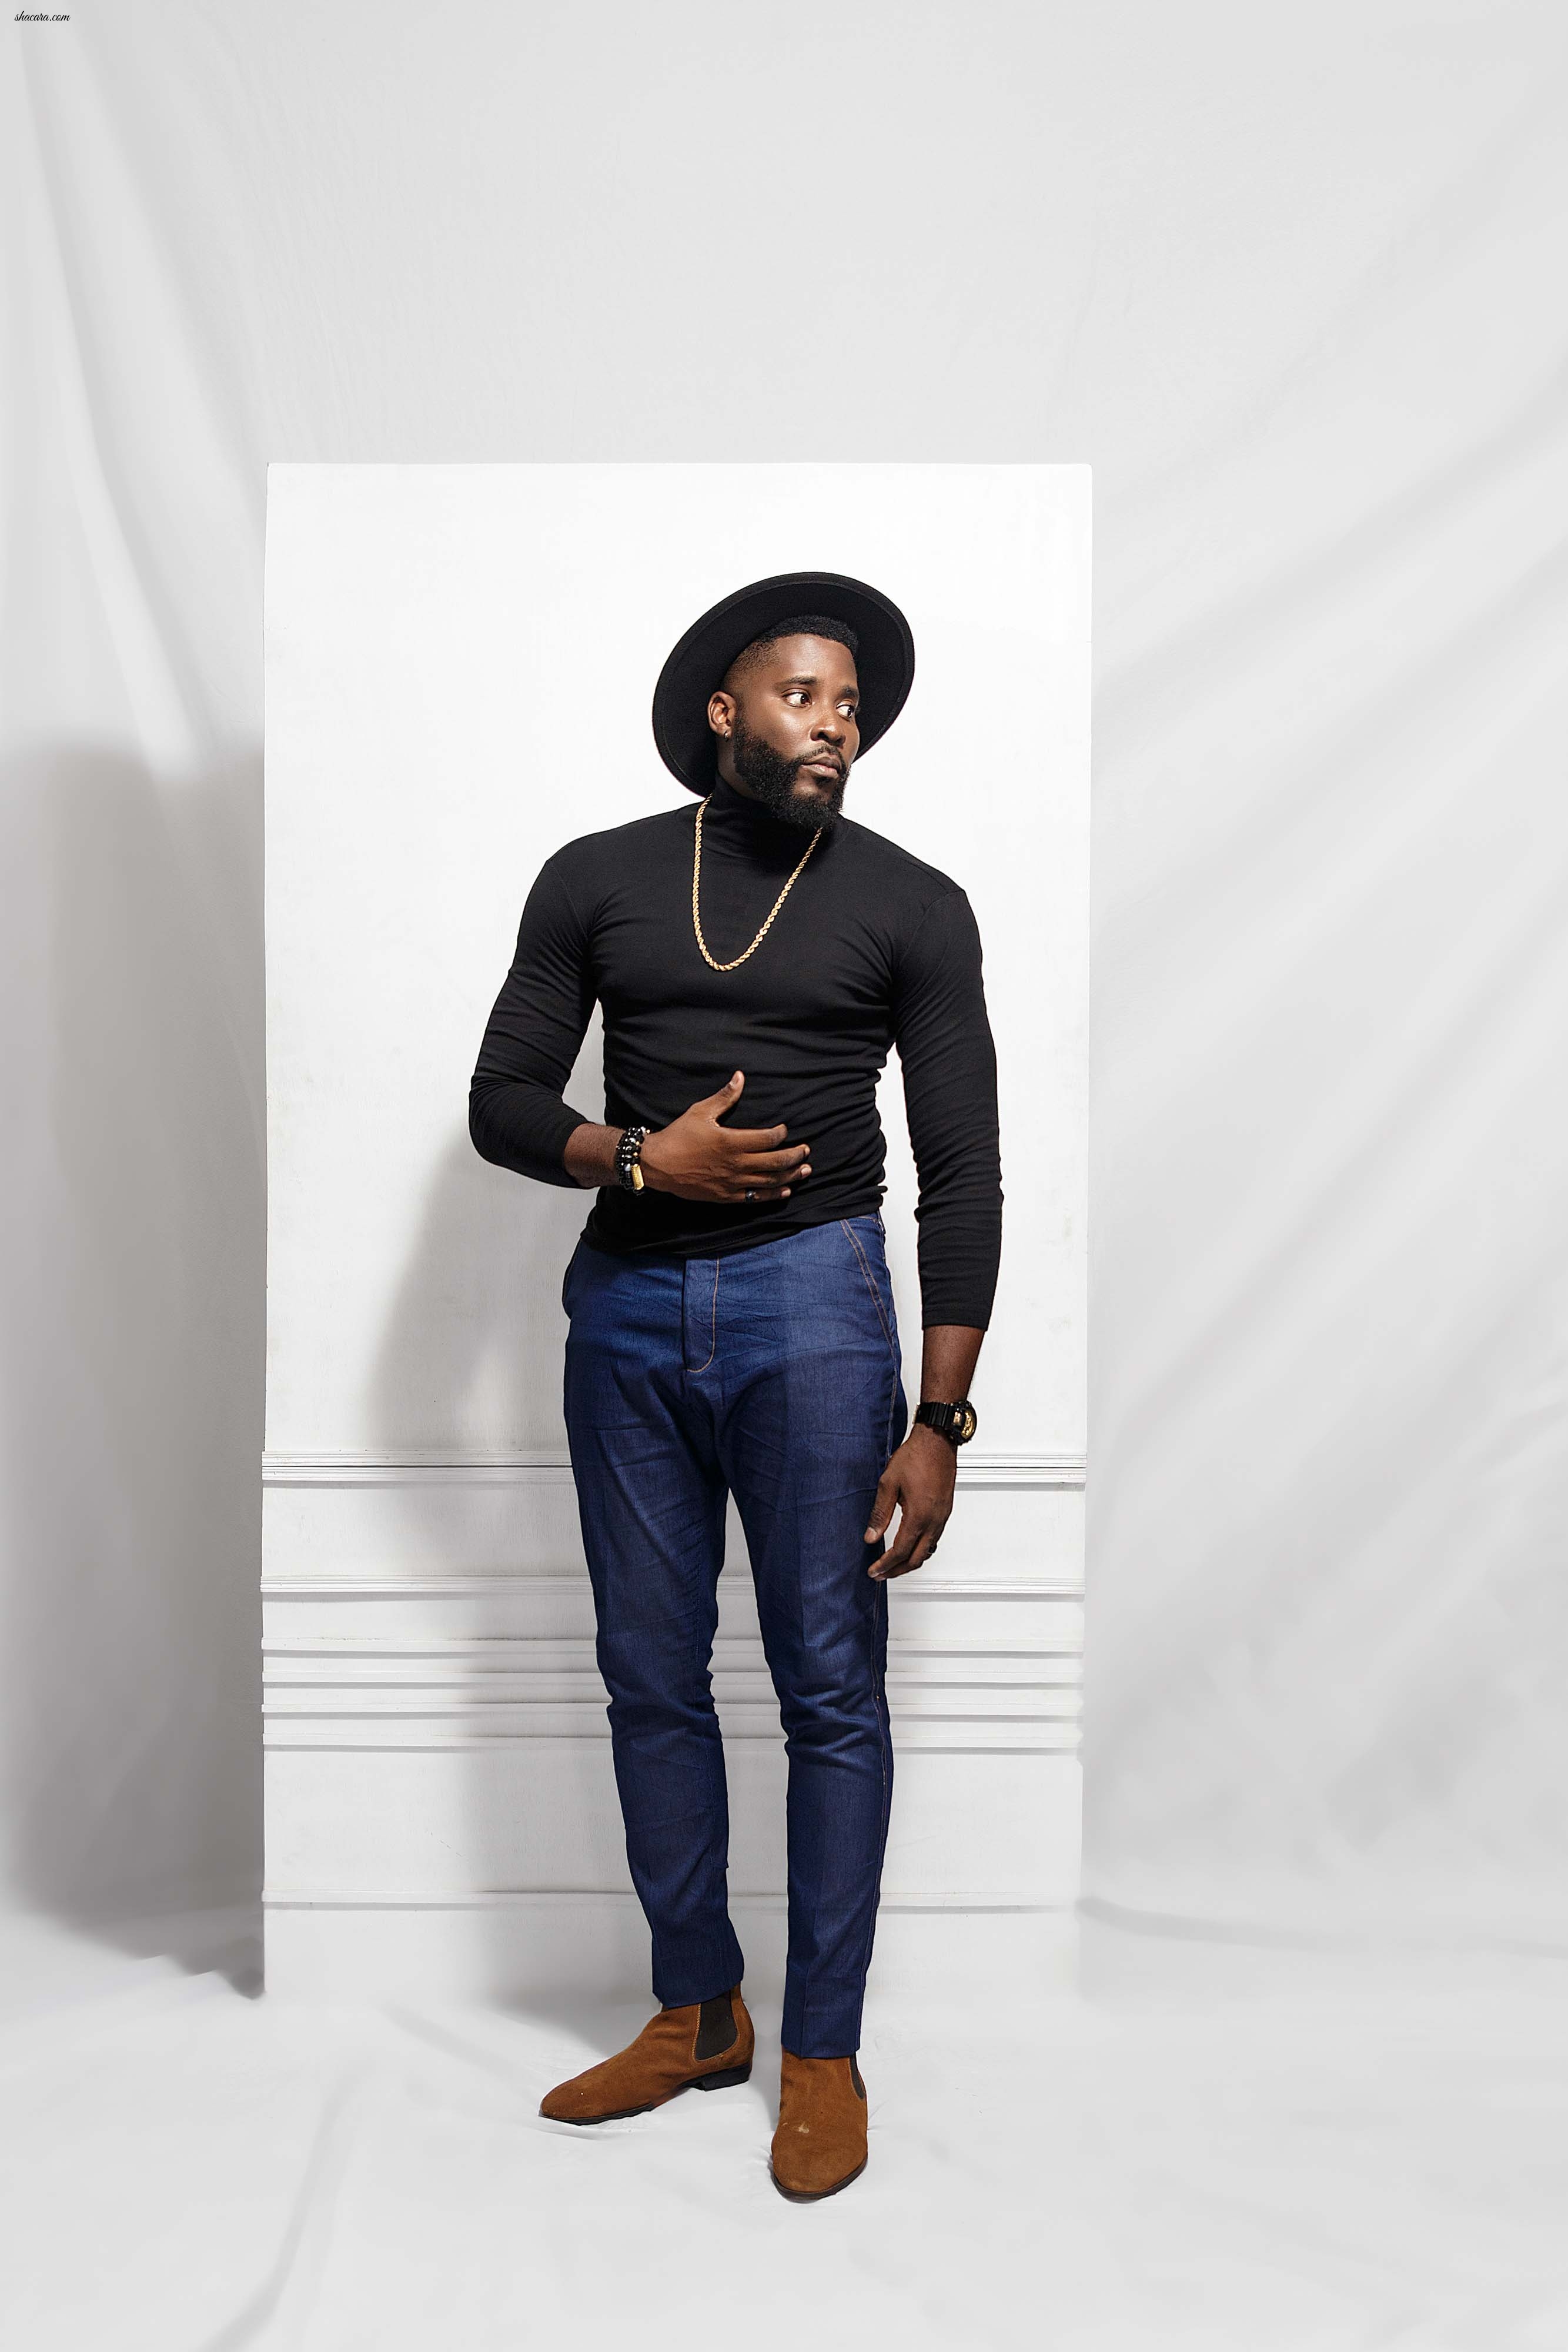 Itunu Homage Delivers Men’s Wardrobe Essentials In Capsule Collection, “Lo Esordio”